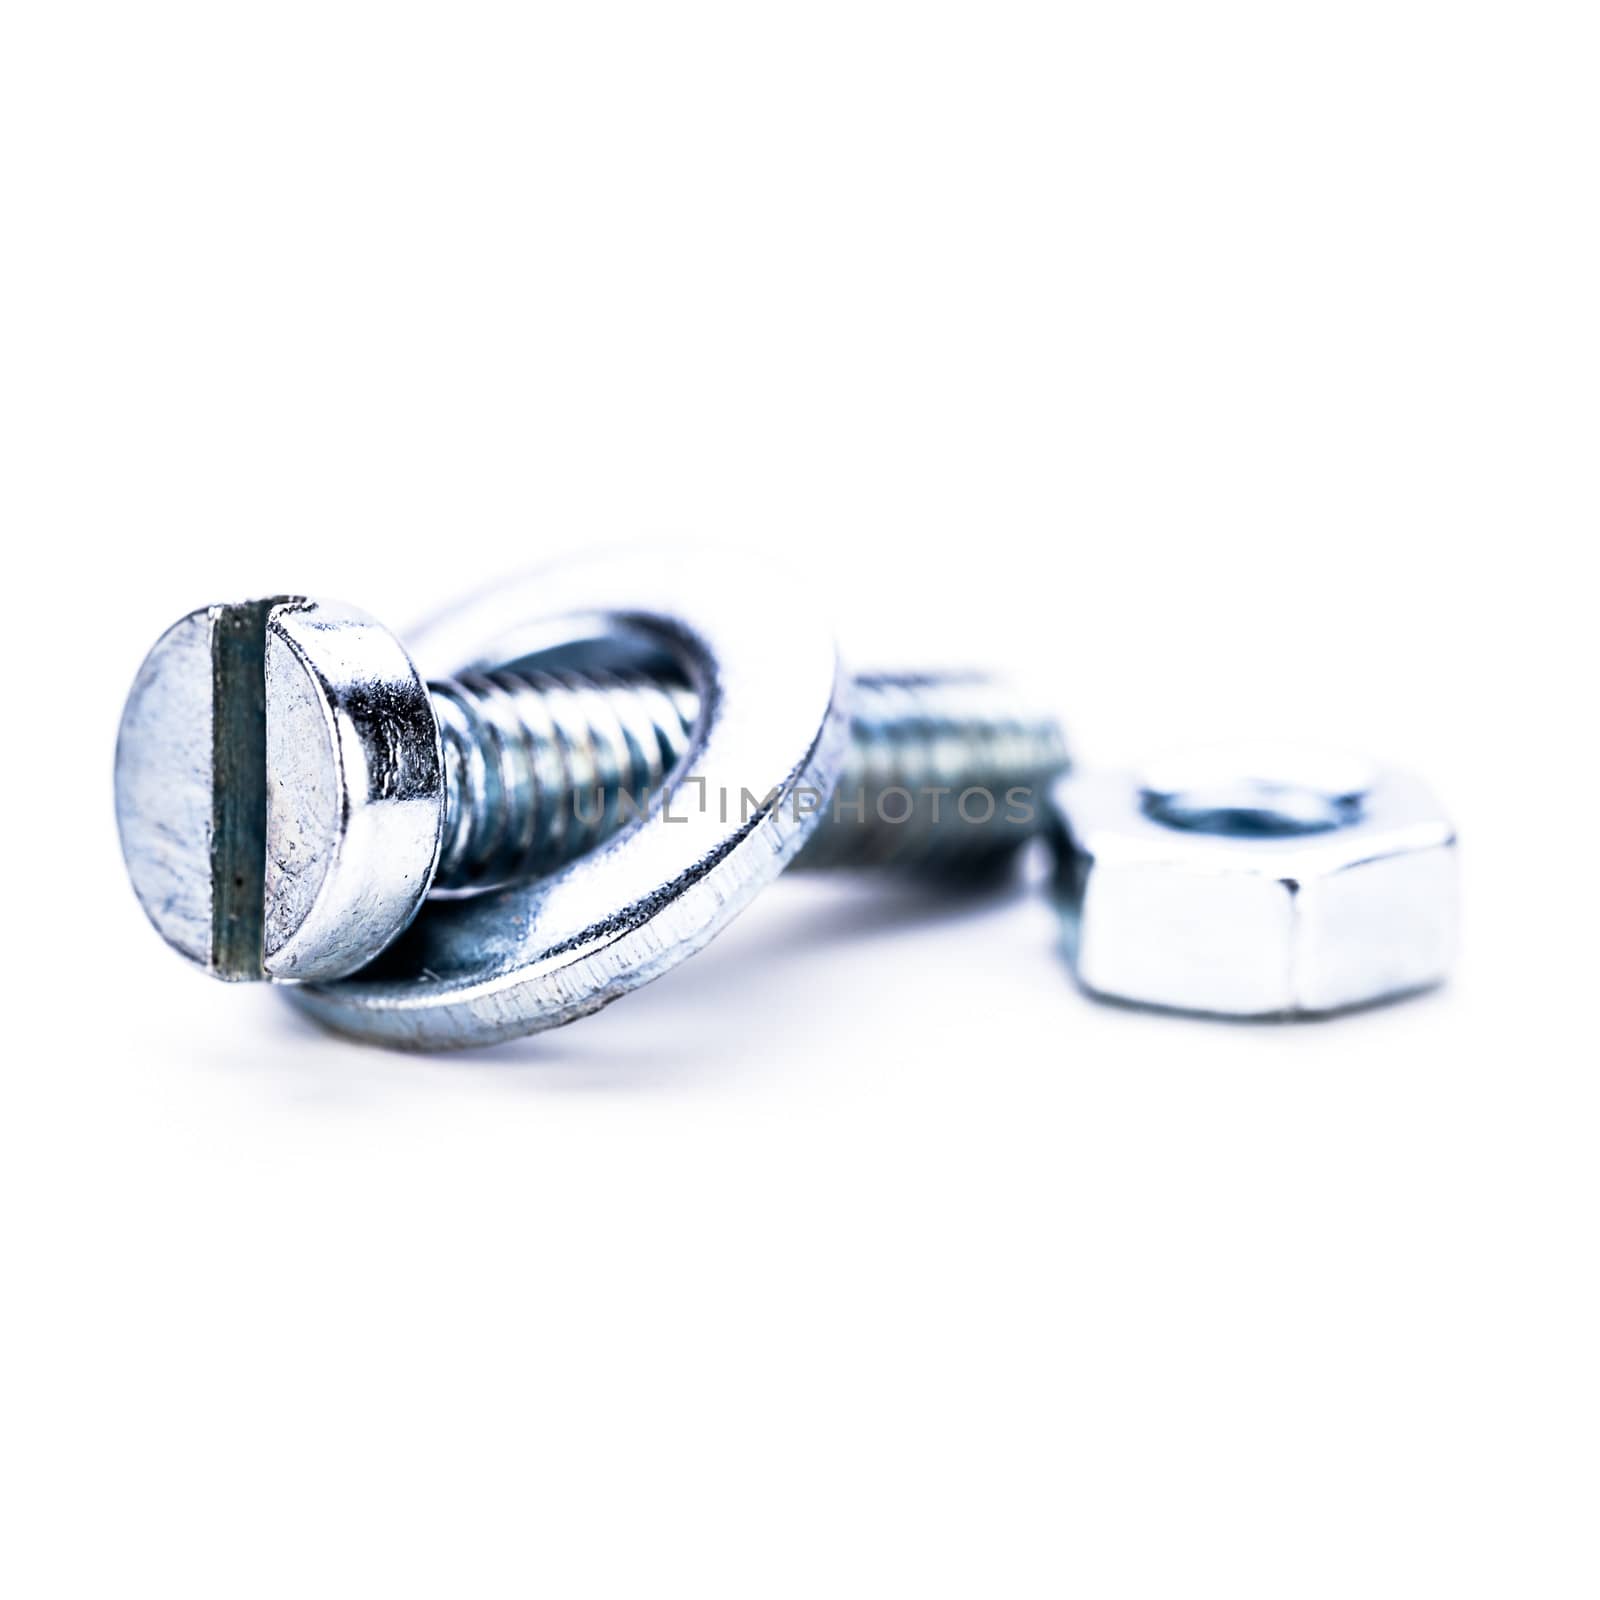 silver steel hexagonal screw tool objects macro by juniart